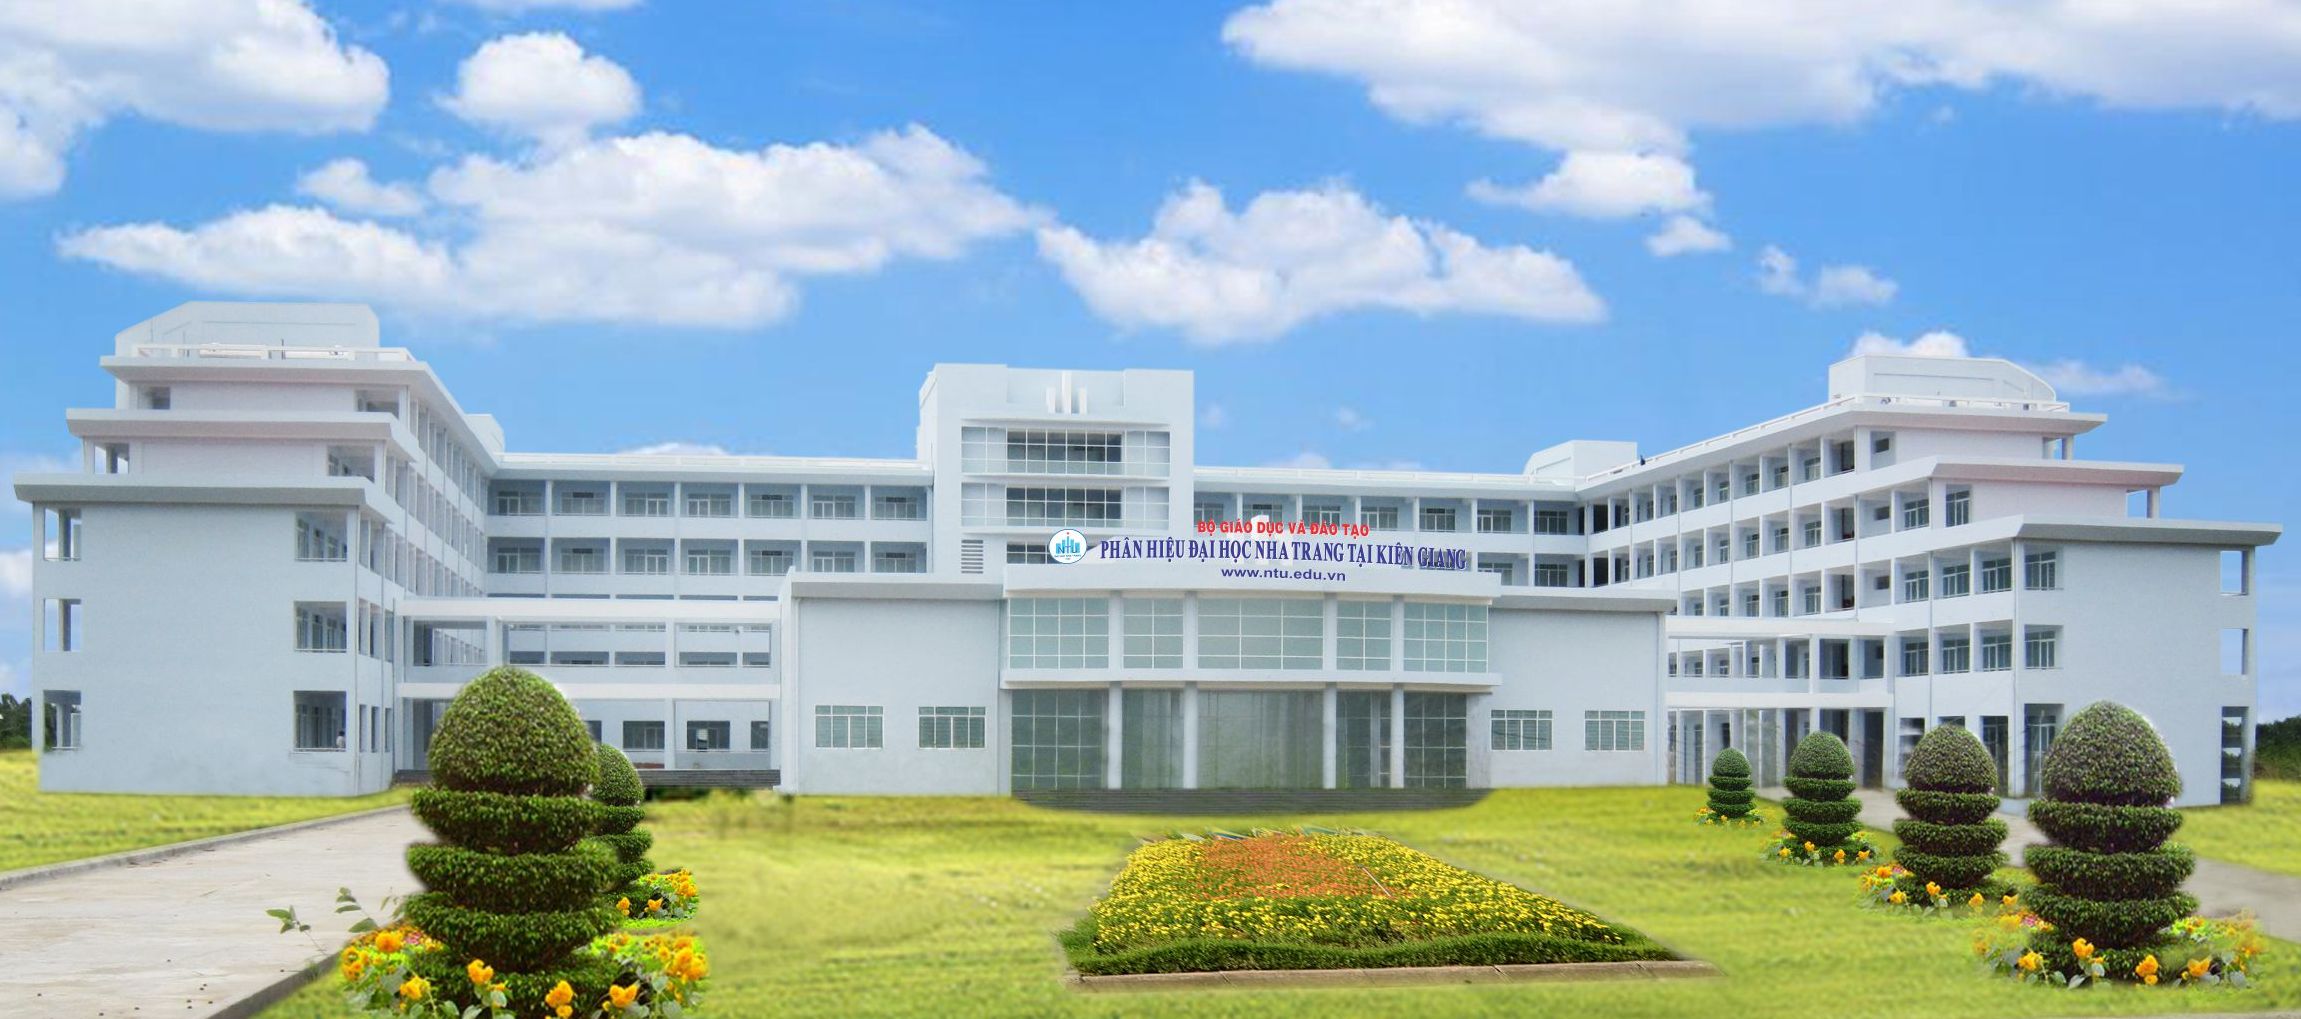 Trường Đại học Nha Trang - Phân hiệu Kiên Giang